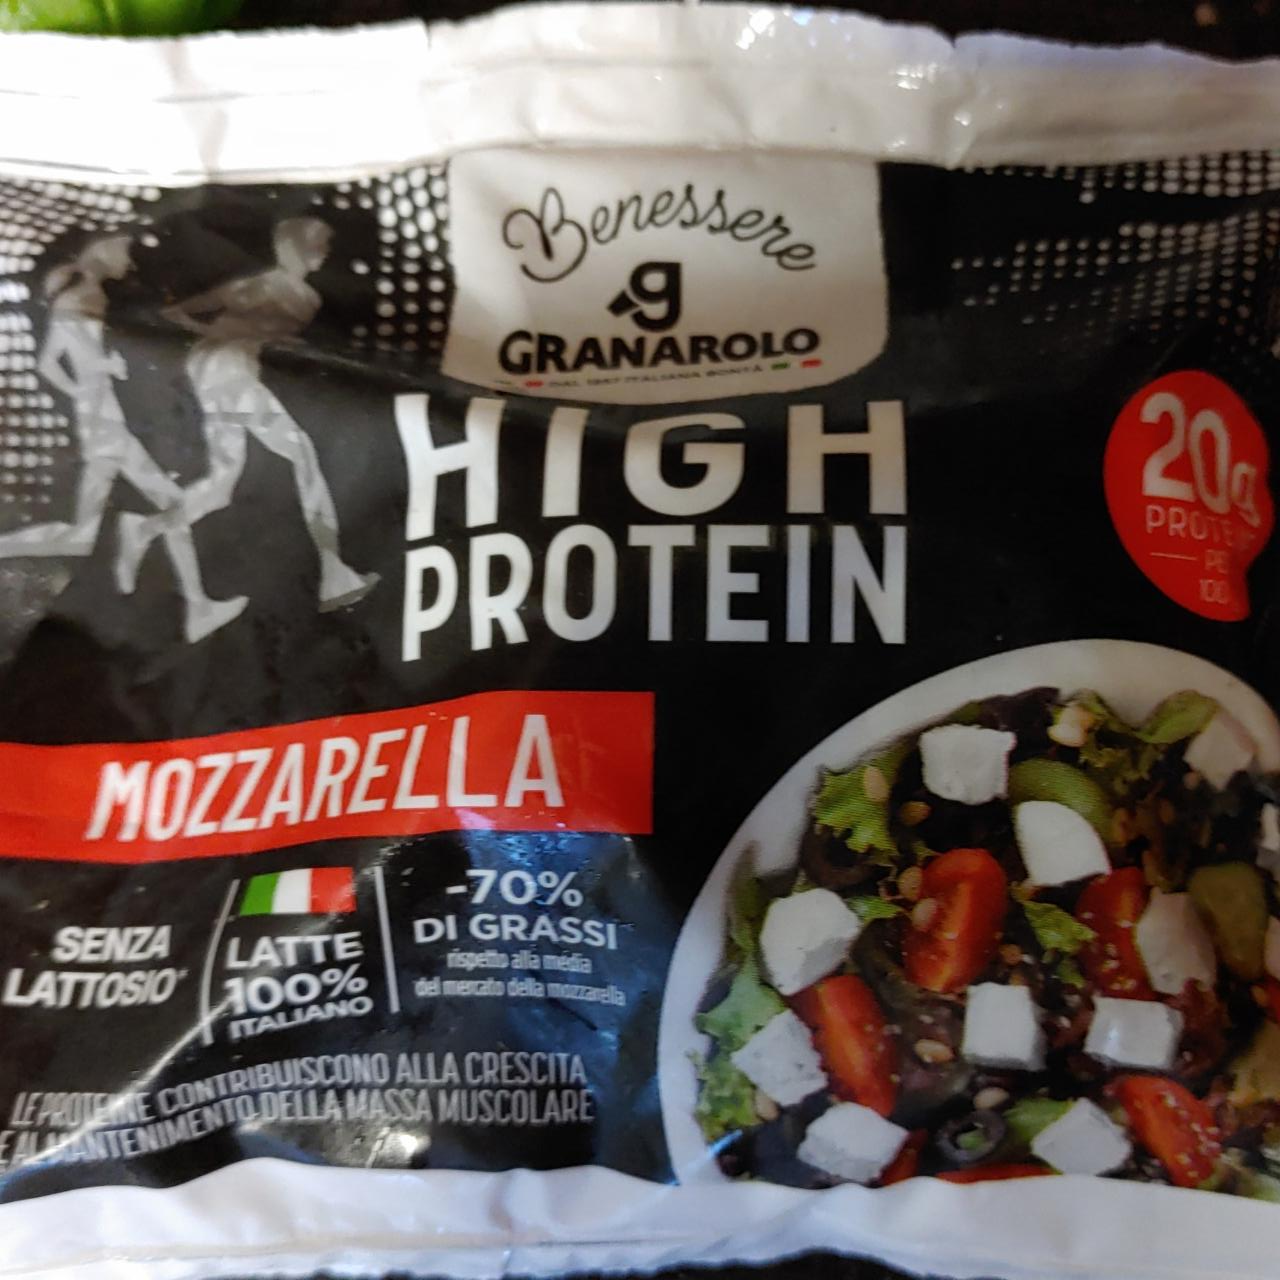 Fotografie - High Protein Mozzarella Granarolo